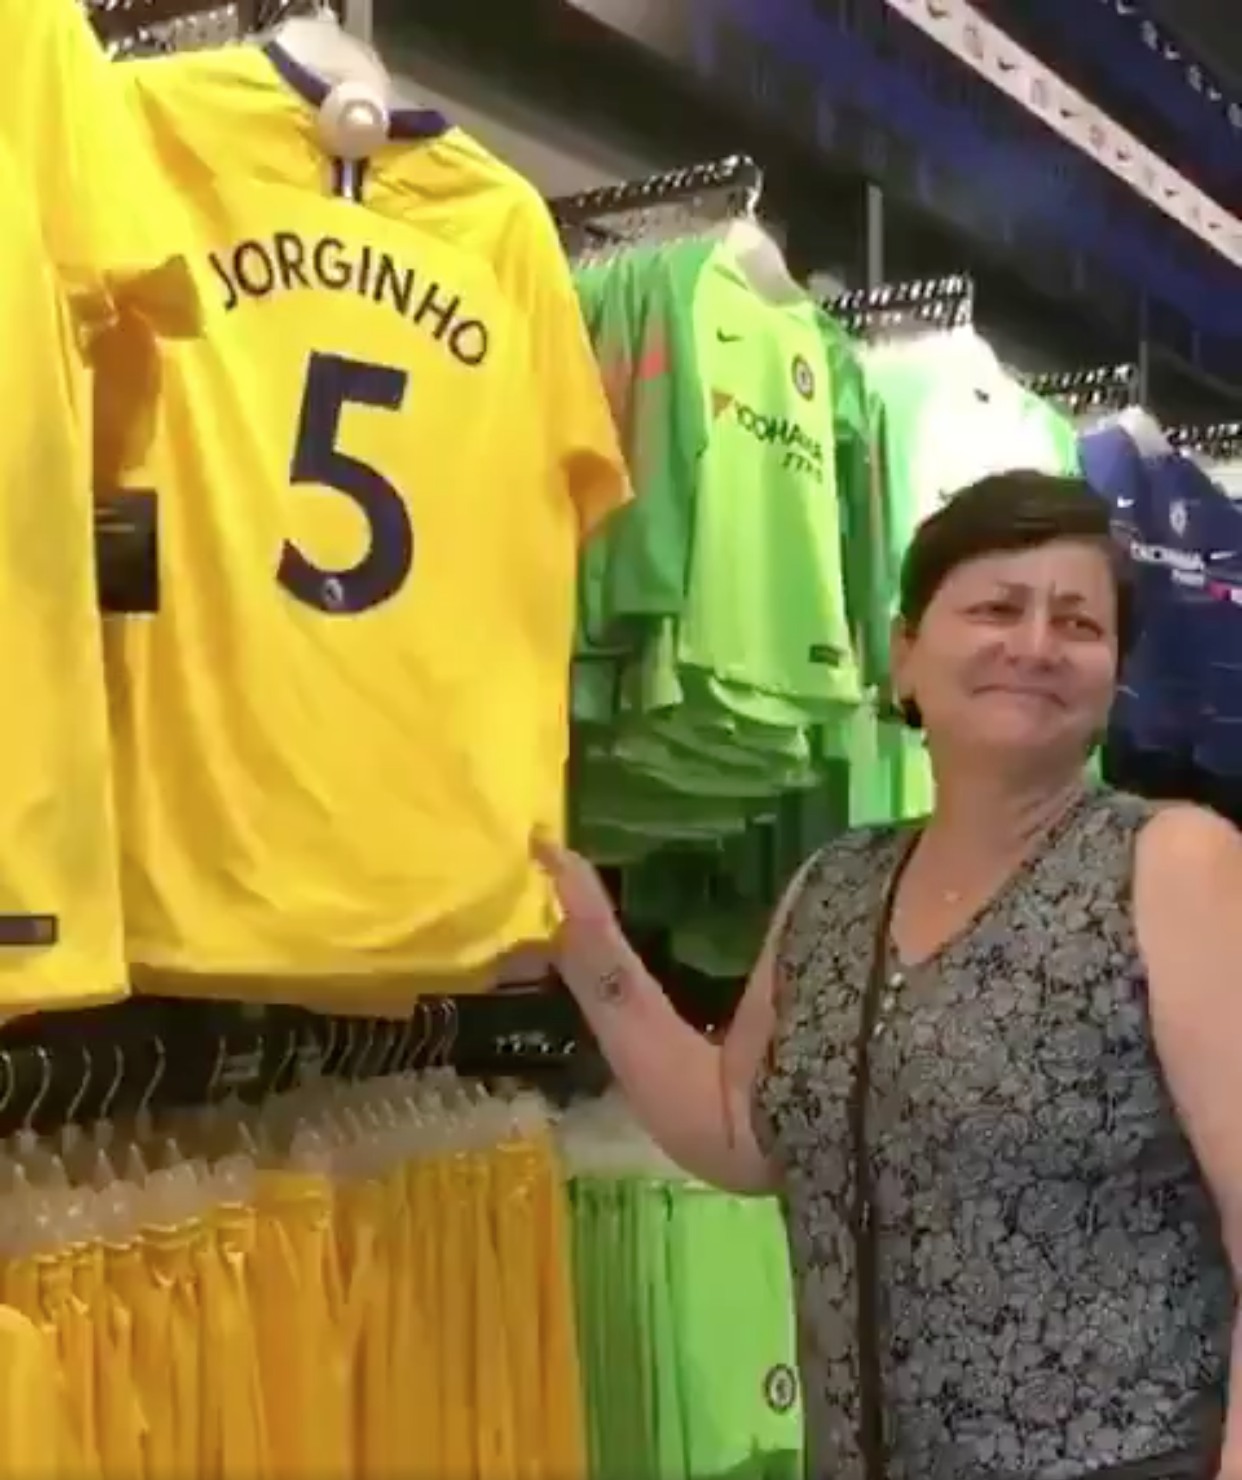 La madre de Jorginho reacciona al ver la camiseta de su hijo en la tienda del Chelsea. | Foto: Twitter